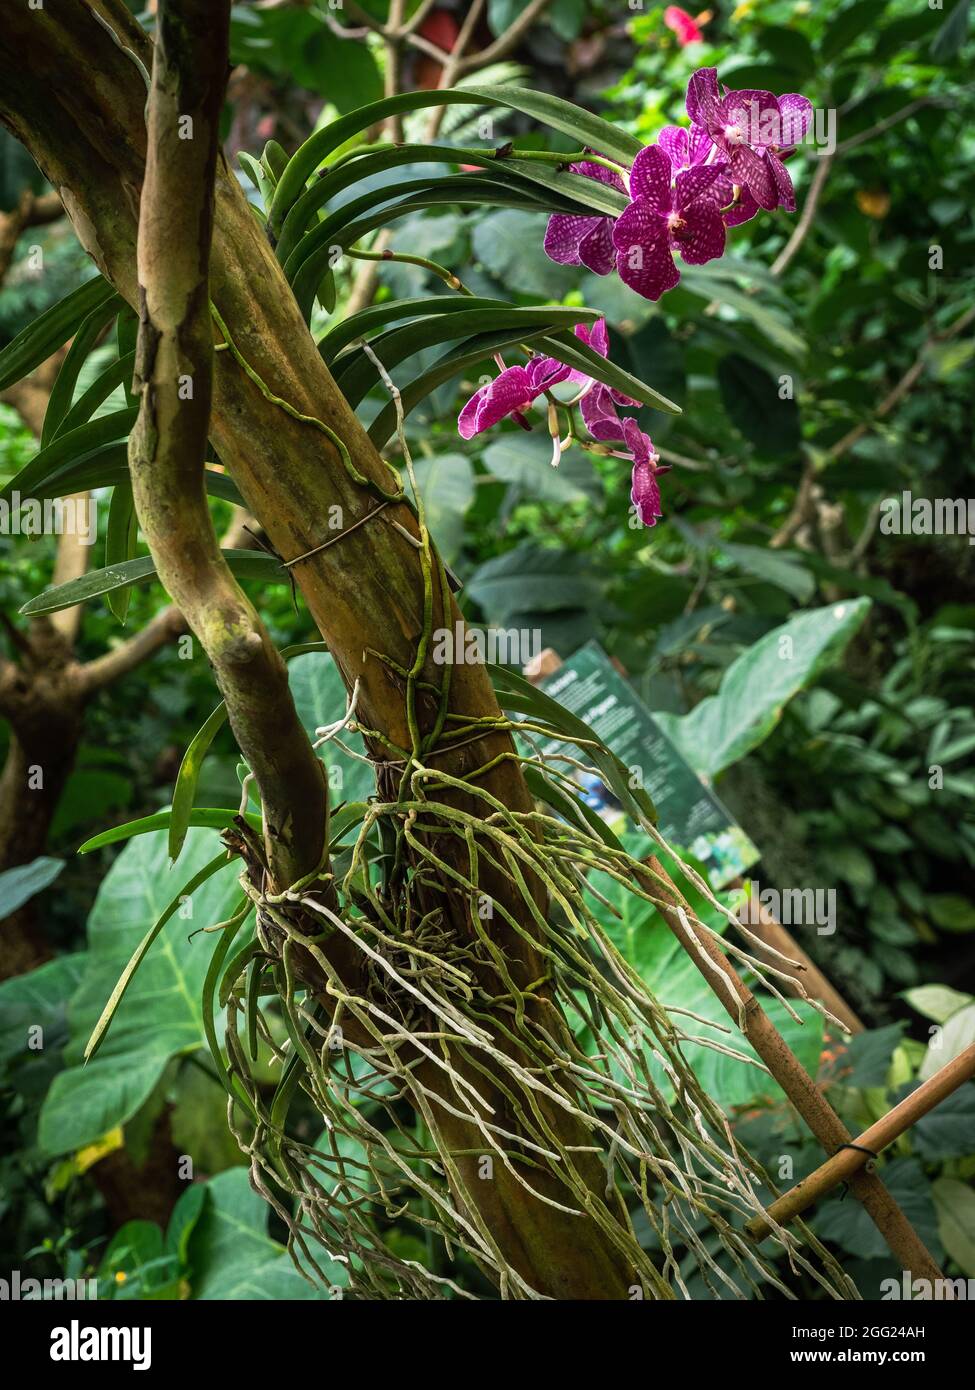 Orchidee in einer natürlichen Umgebung auf dem Baum Stockfotografie - Alamy